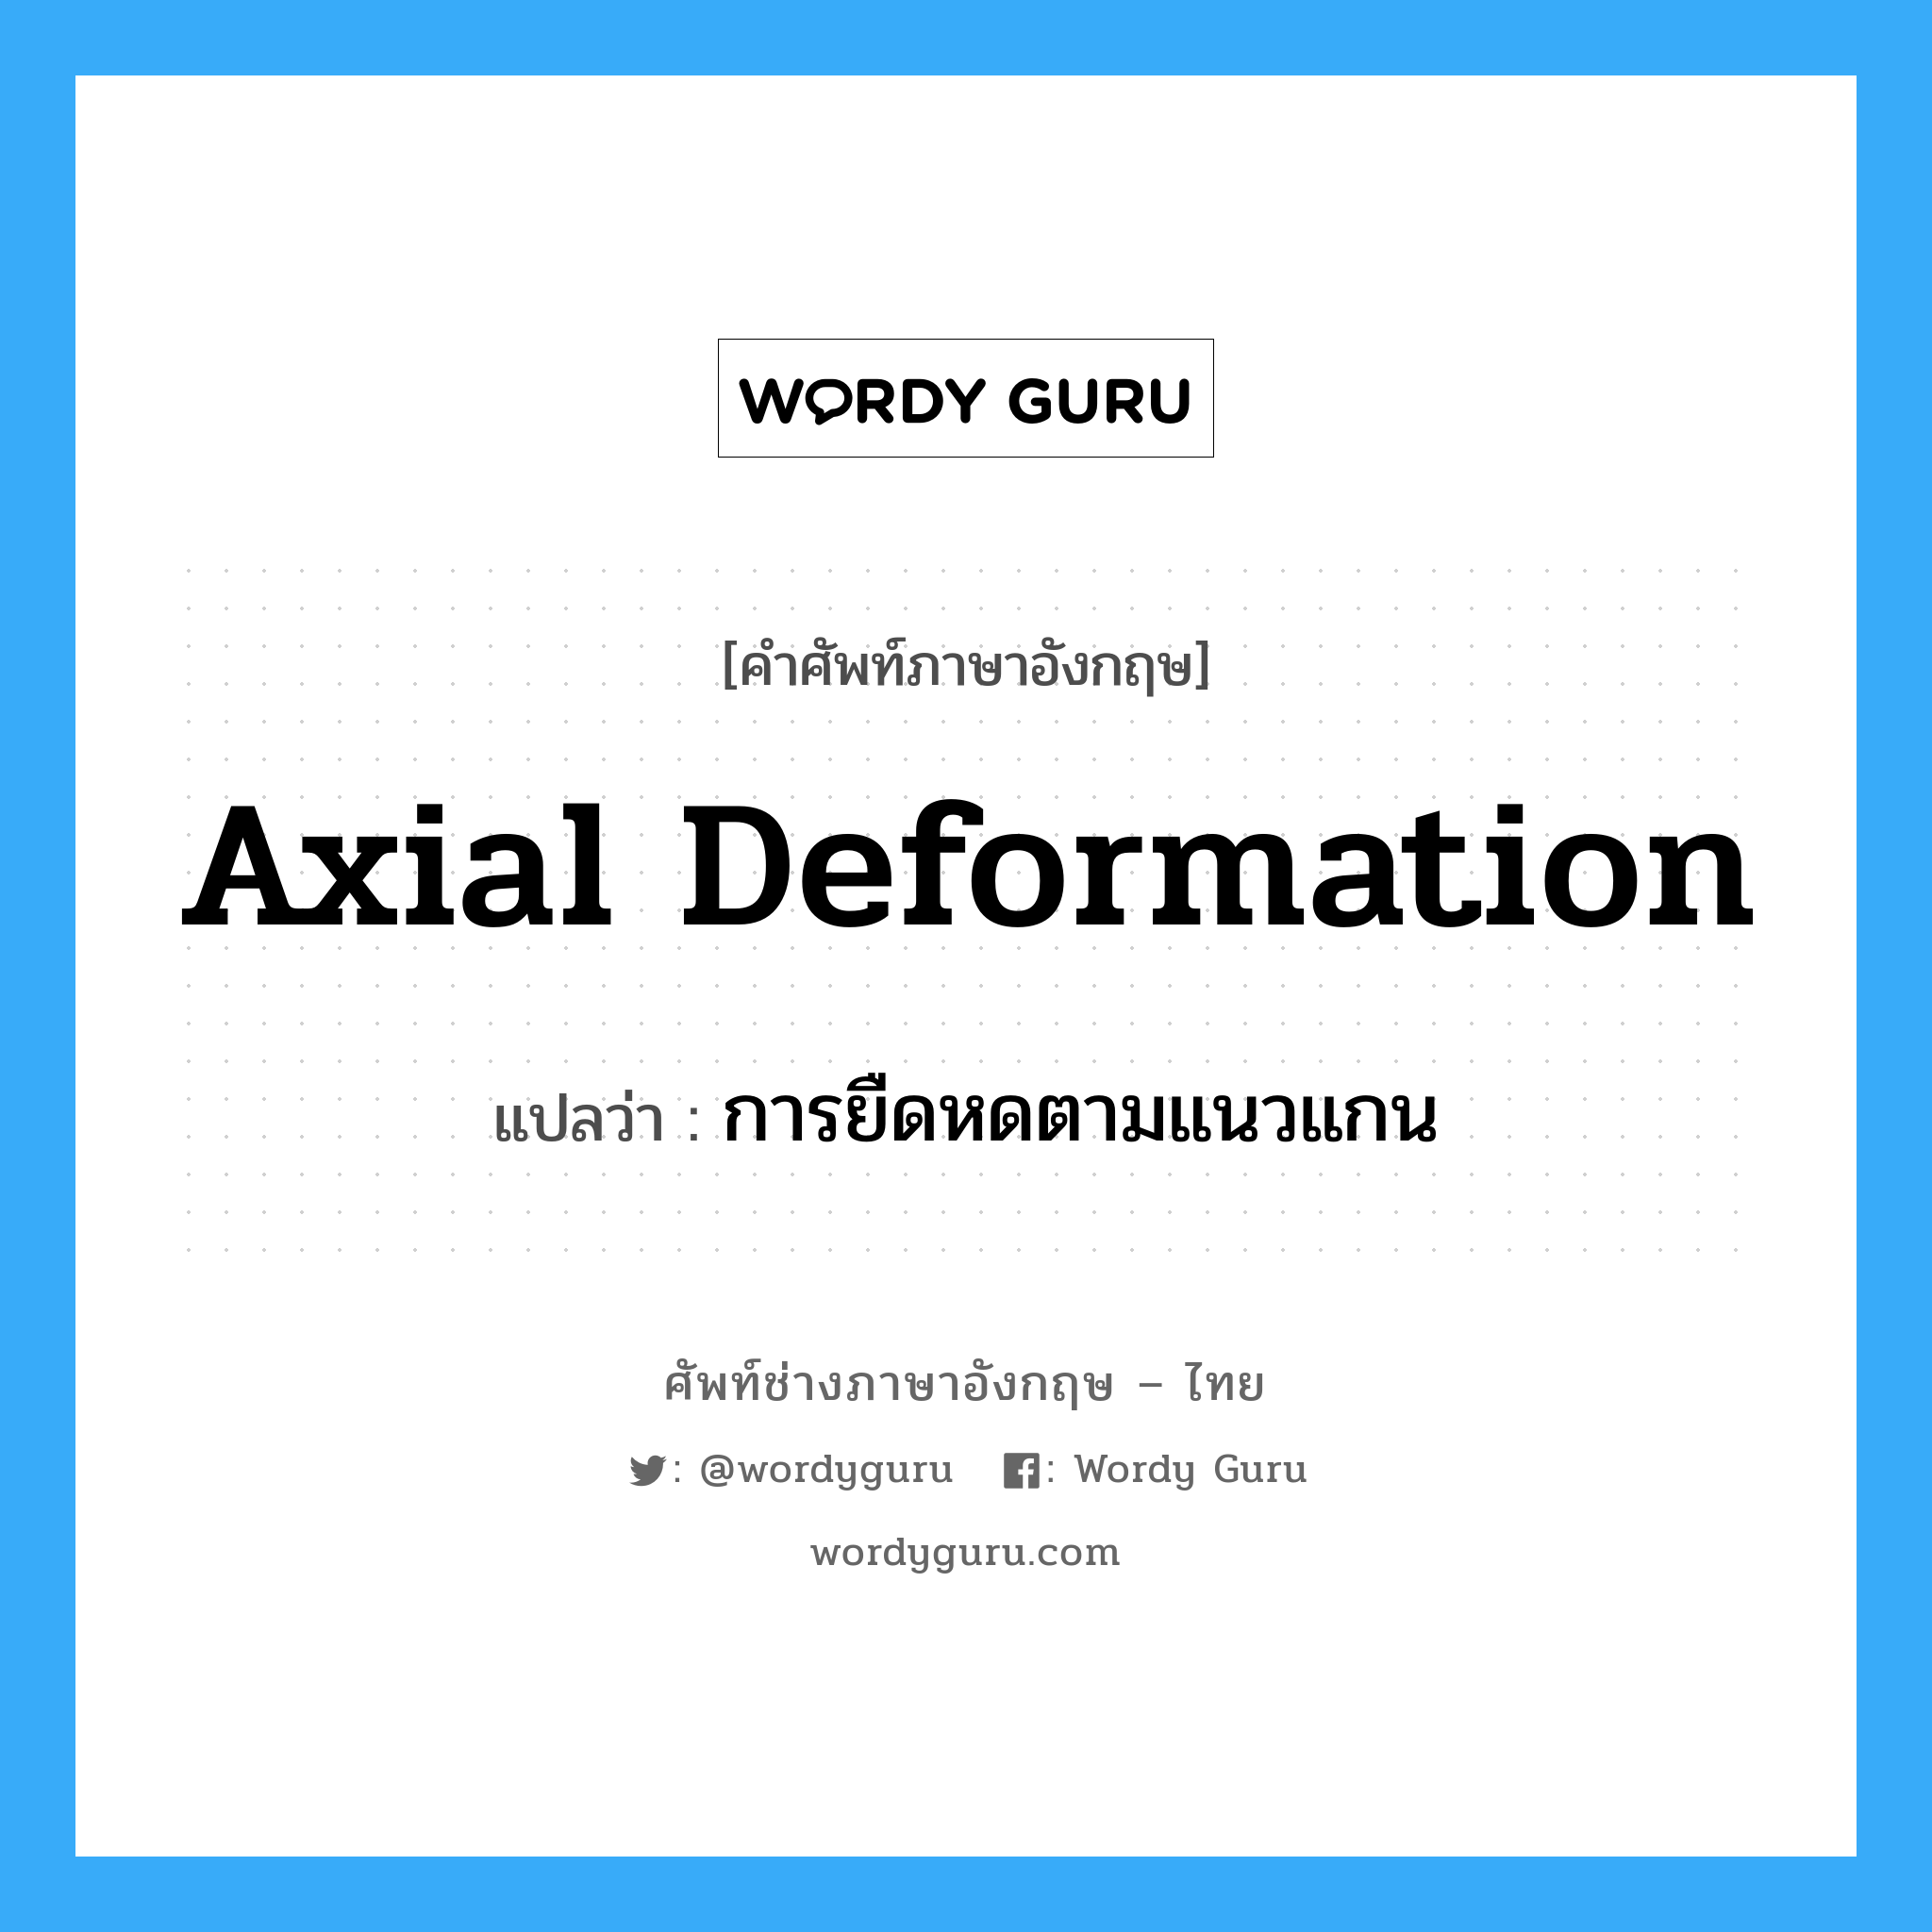 axial deformation แปลว่า?, คำศัพท์ช่างภาษาอังกฤษ - ไทย axial deformation คำศัพท์ภาษาอังกฤษ axial deformation แปลว่า การยืดหดตามแนวแกน